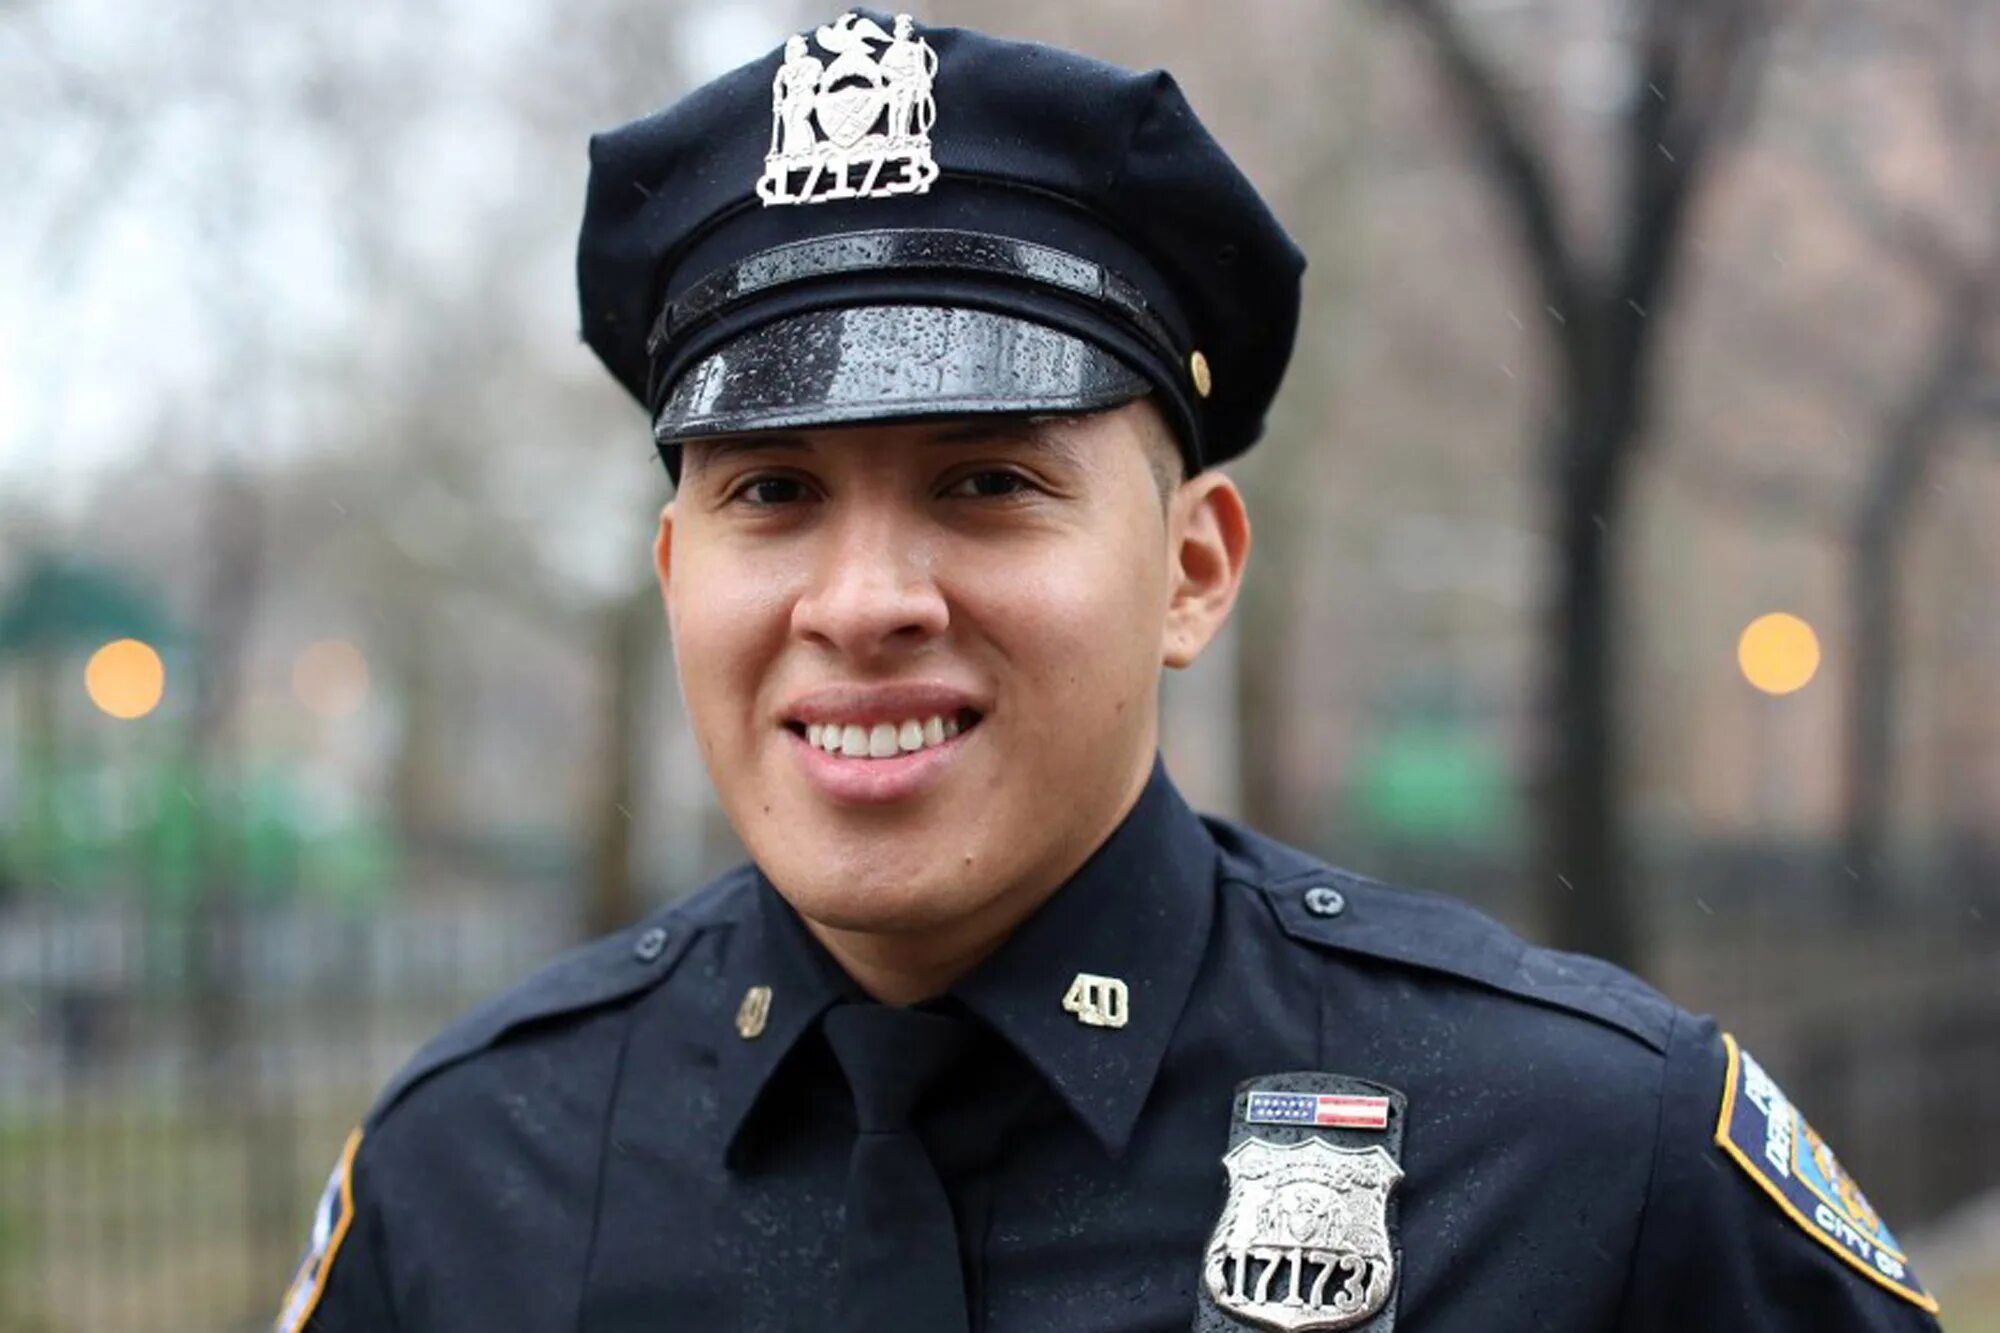 Фото полицейского. Полицейский офицер. Фото офицера полиции. NYPD Officer. Фотография полицейского в реальной жизни.